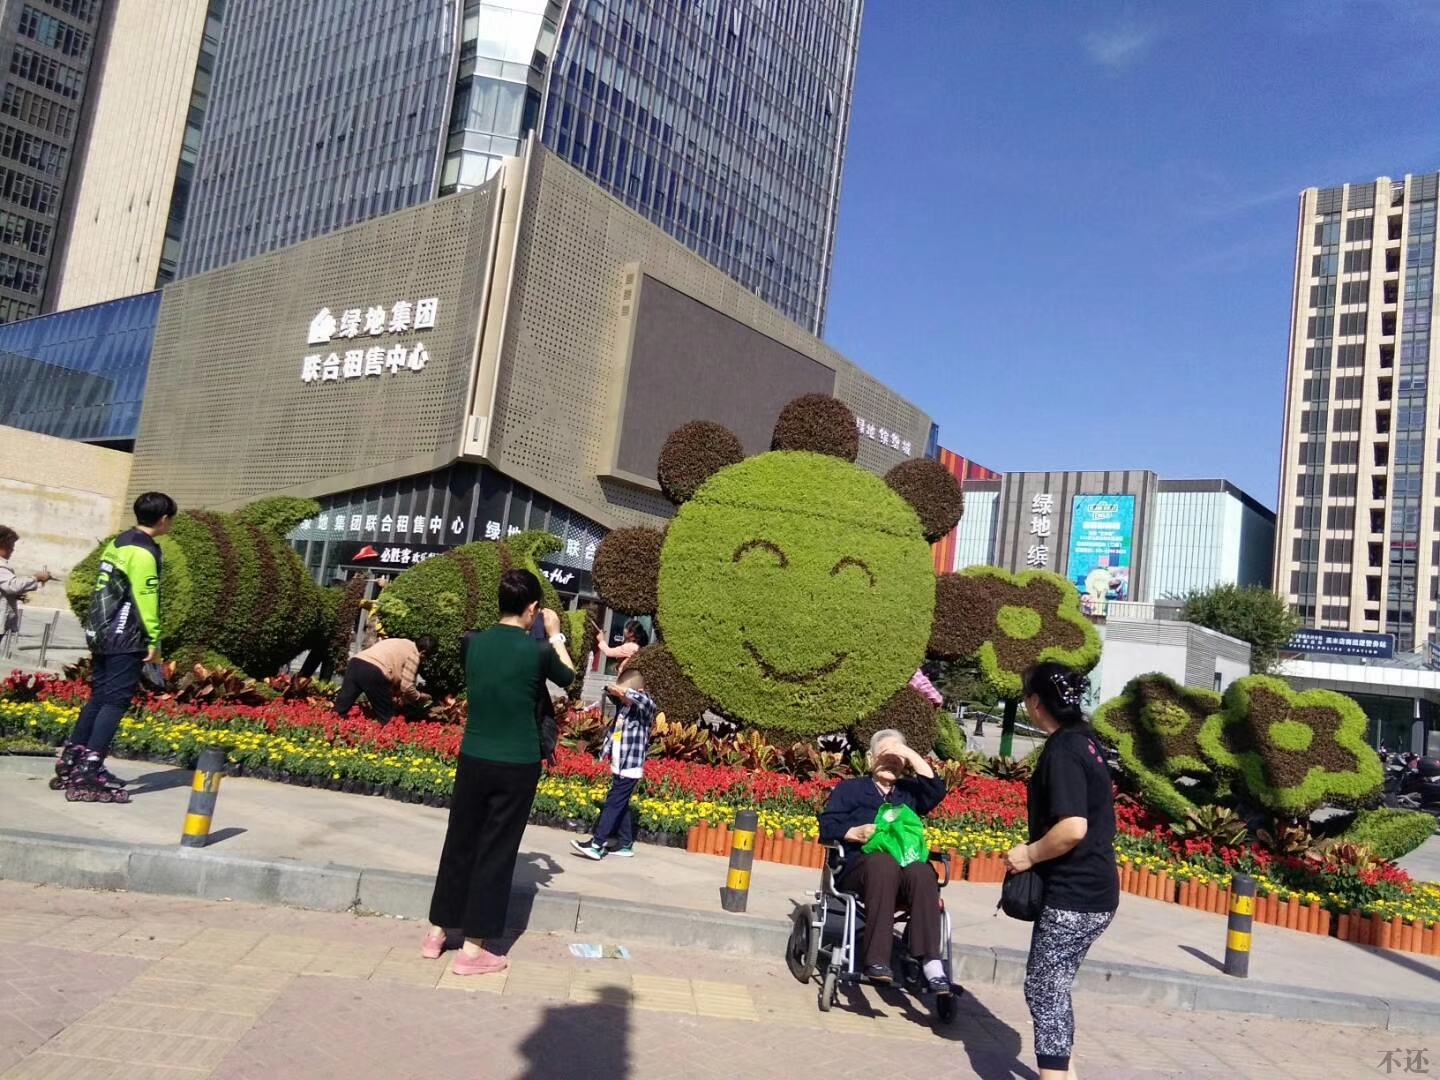 晋城立体花坛营造节日氛围 着力提升景观效果